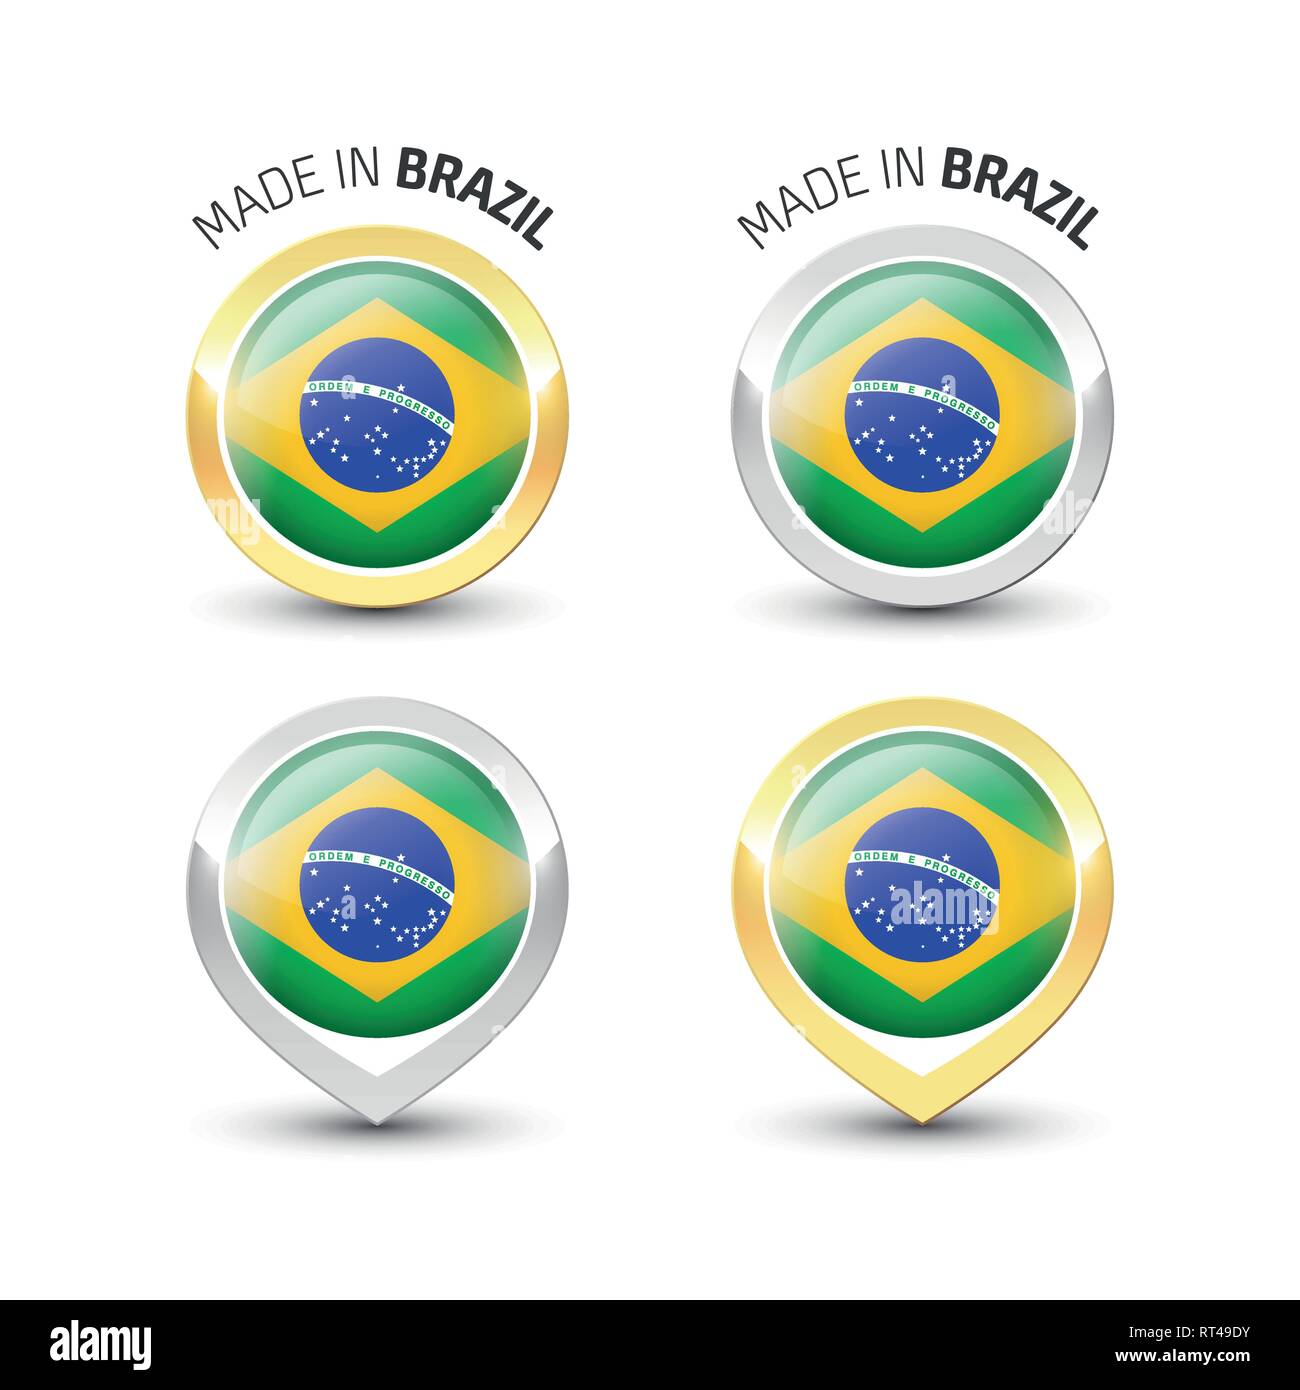 Fabriqué au Brésil - label garanti avec le drapeau brésilien l'intérieur de ronde des icônes d'or et d'argent. Illustration de Vecteur